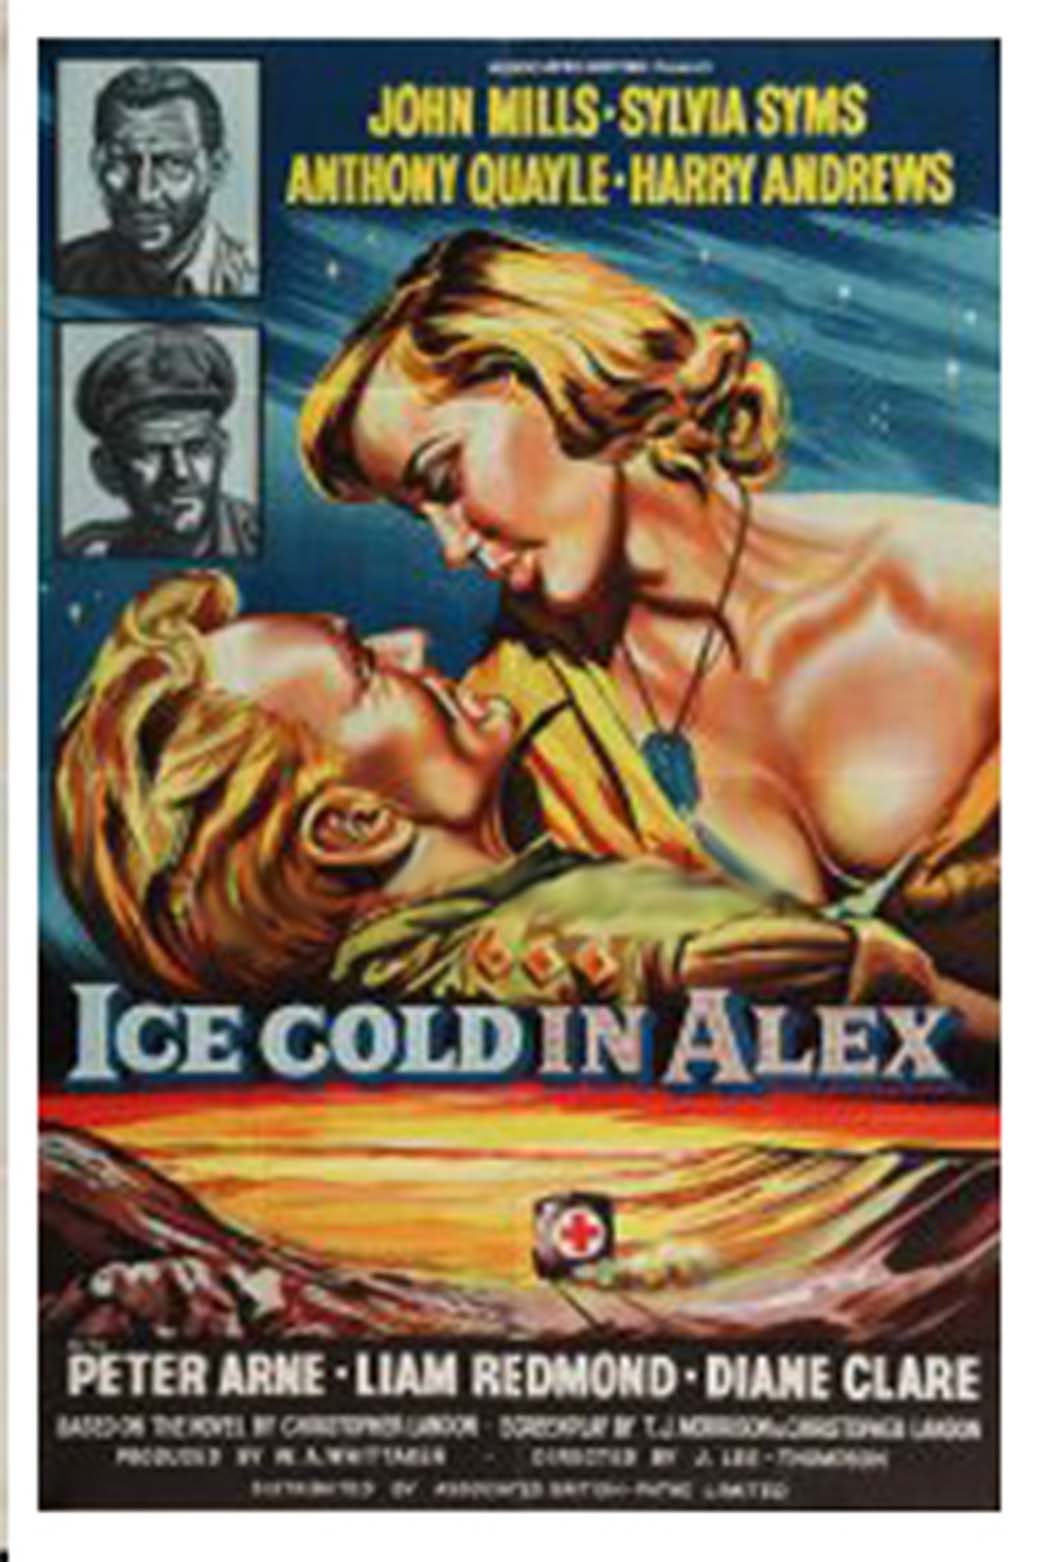 Fugitivos del Desierto (Ice Cold in Alex / 1958)